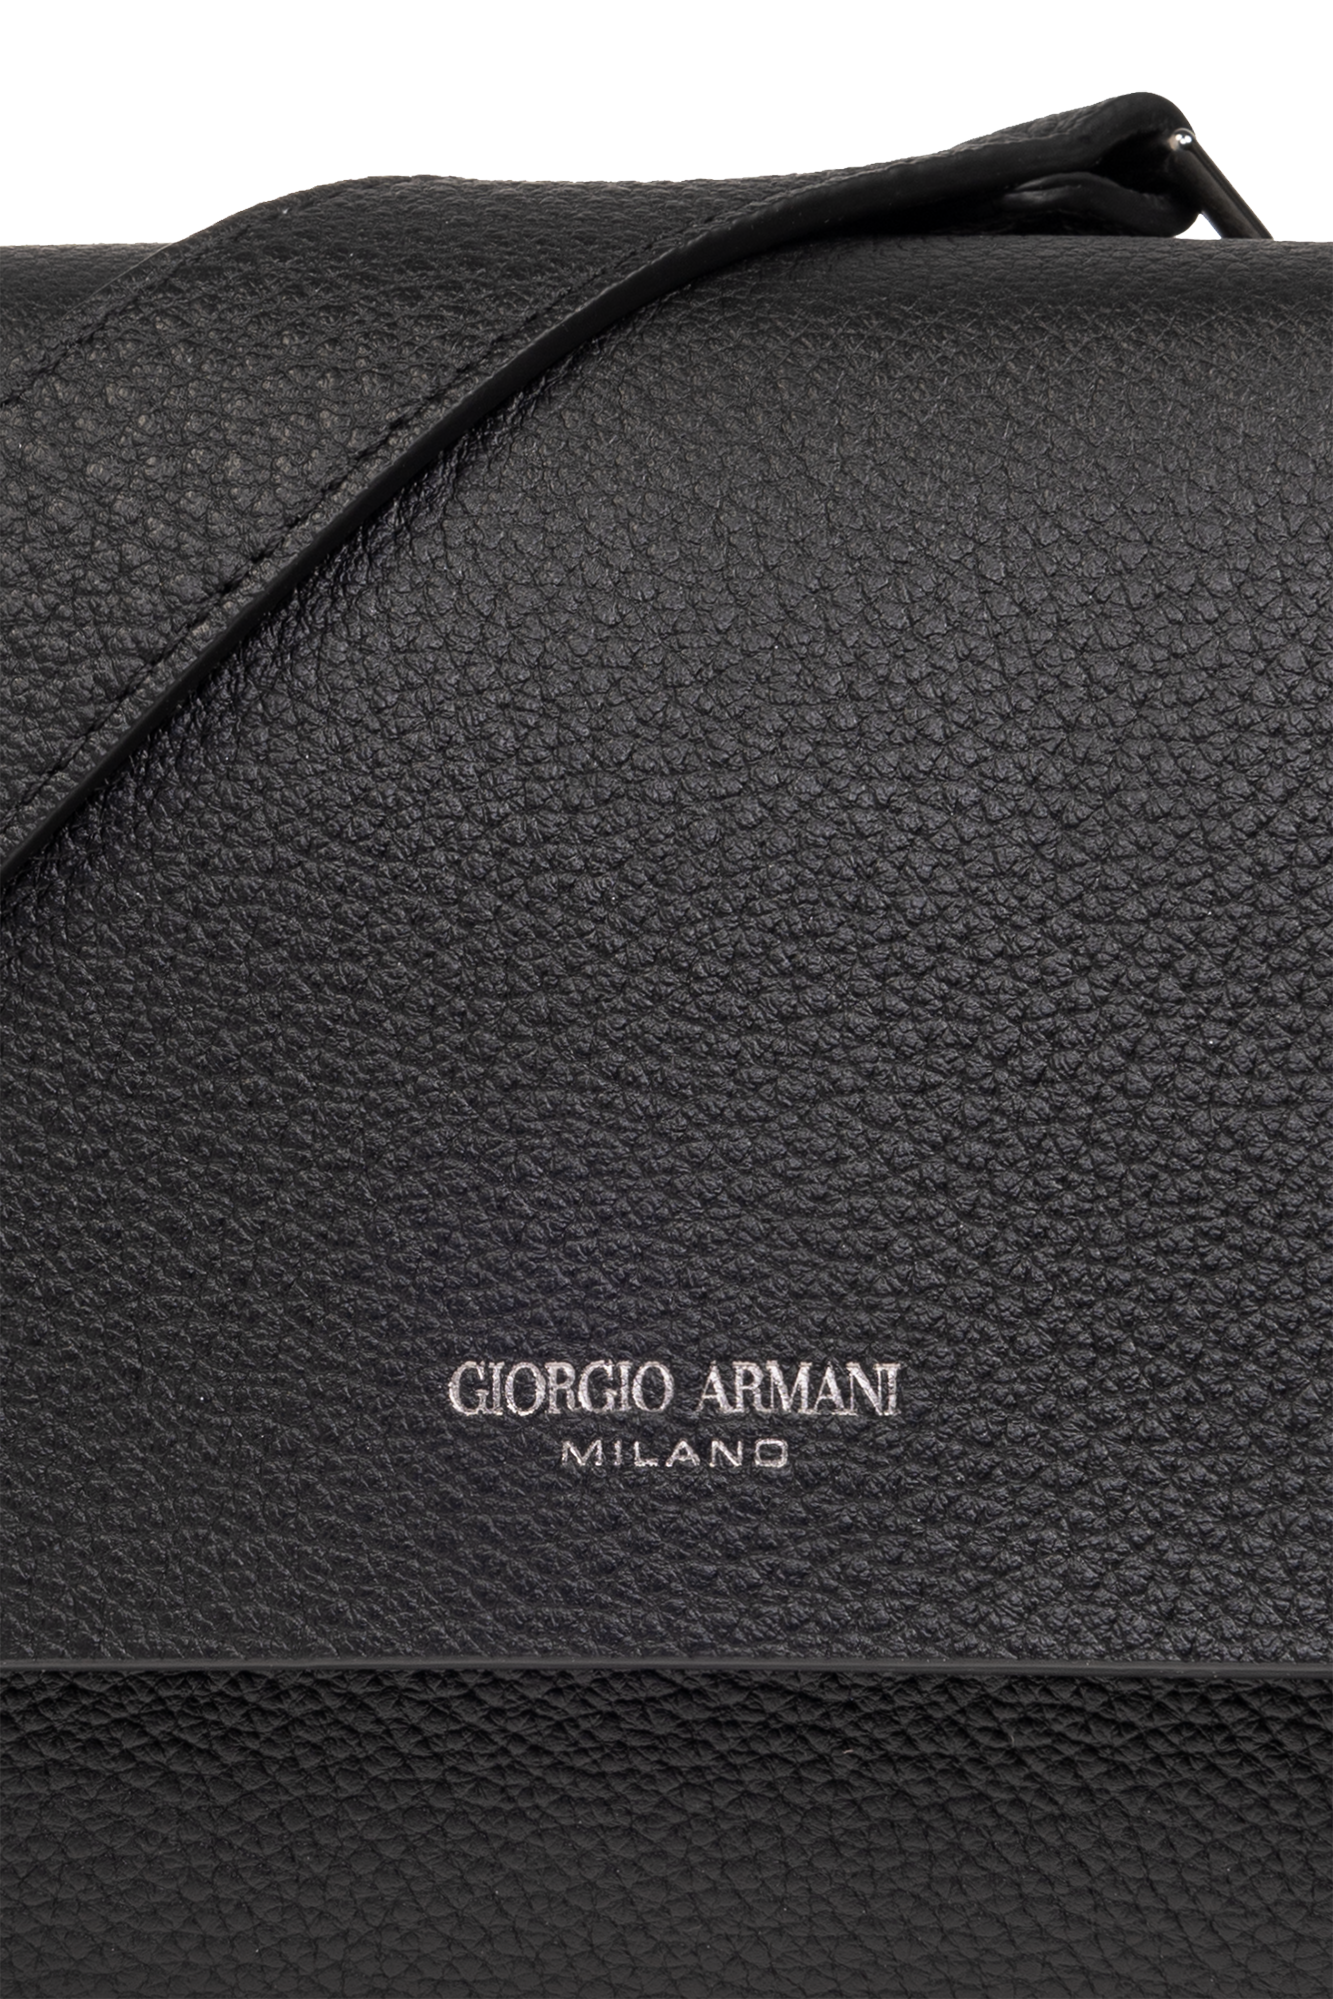 Giorgio Armani Shoulder bag with logo